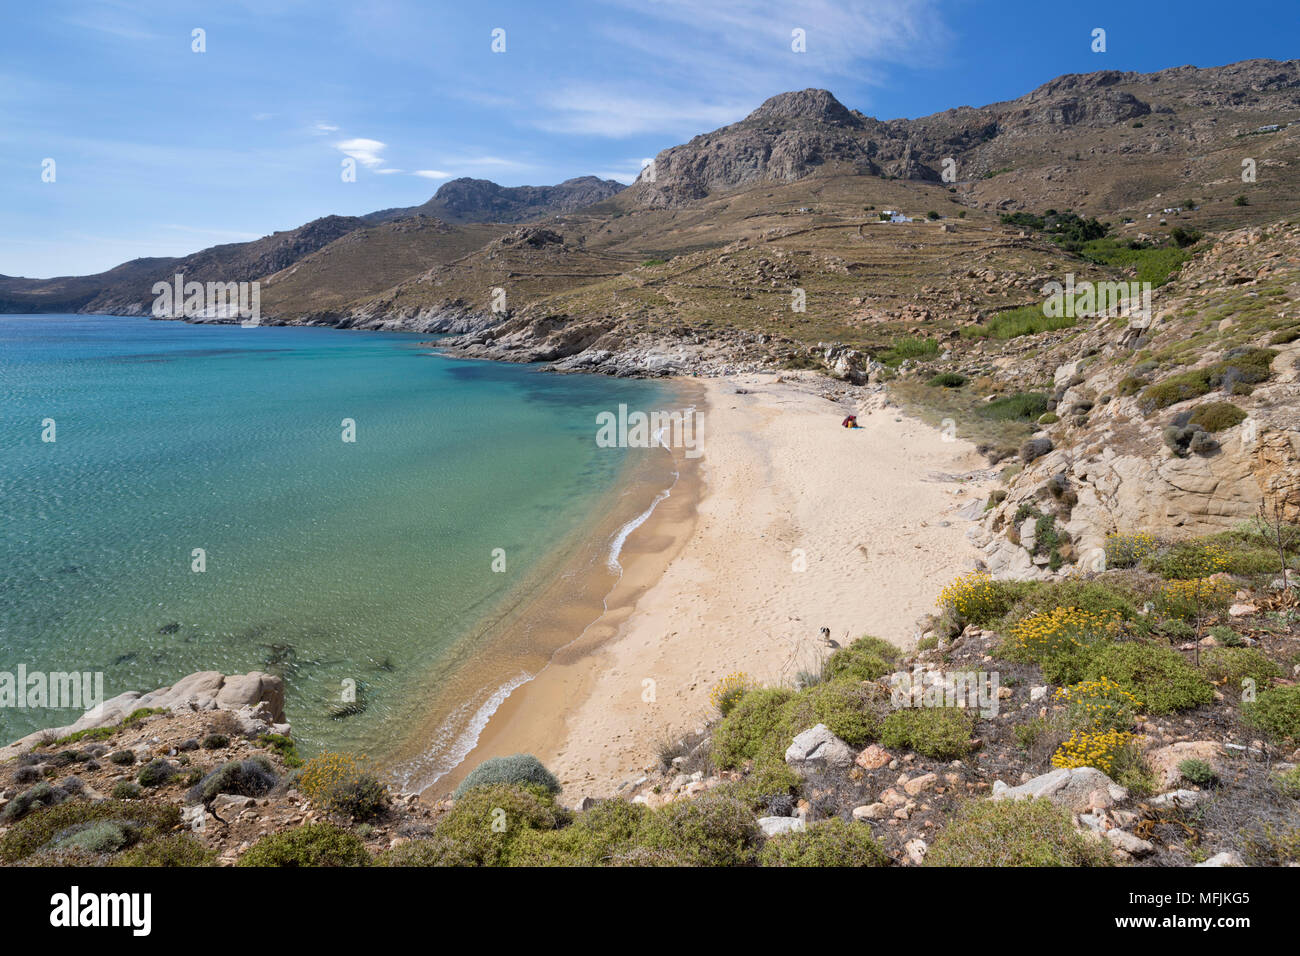 Vue sur la plage de Kalo Livadi Ampeli près de la côte sud de l'île de Serifos, Cyclades, Mer Égée,, îles grecques, Grèce, Europe Banque D'Images